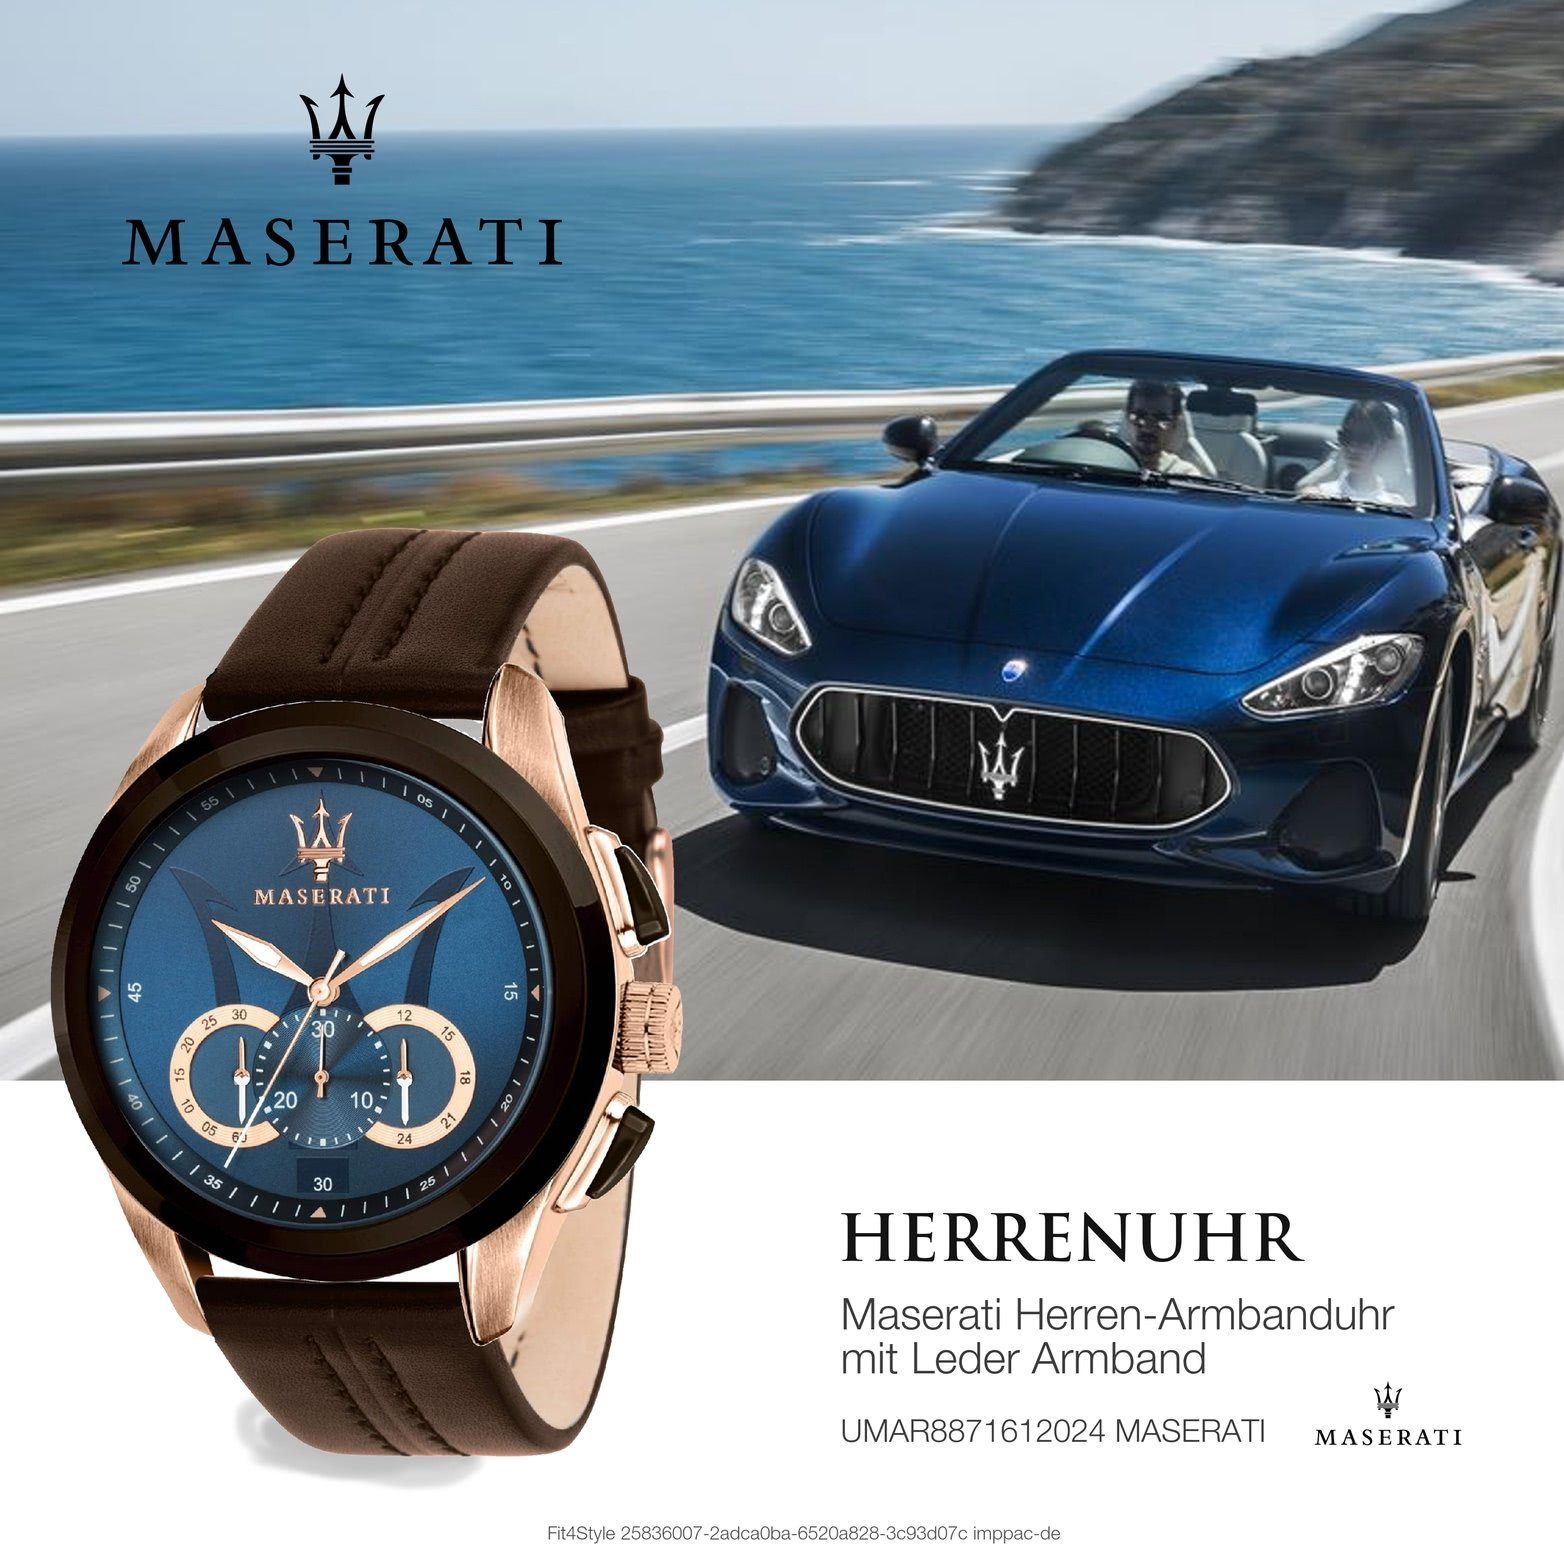 MASERATI Chronograph Maserati Leder Lederarmband, Herrenuhr Armband-Uhr, rundes Gehäuse, blau (ca. groß 55x45mm)